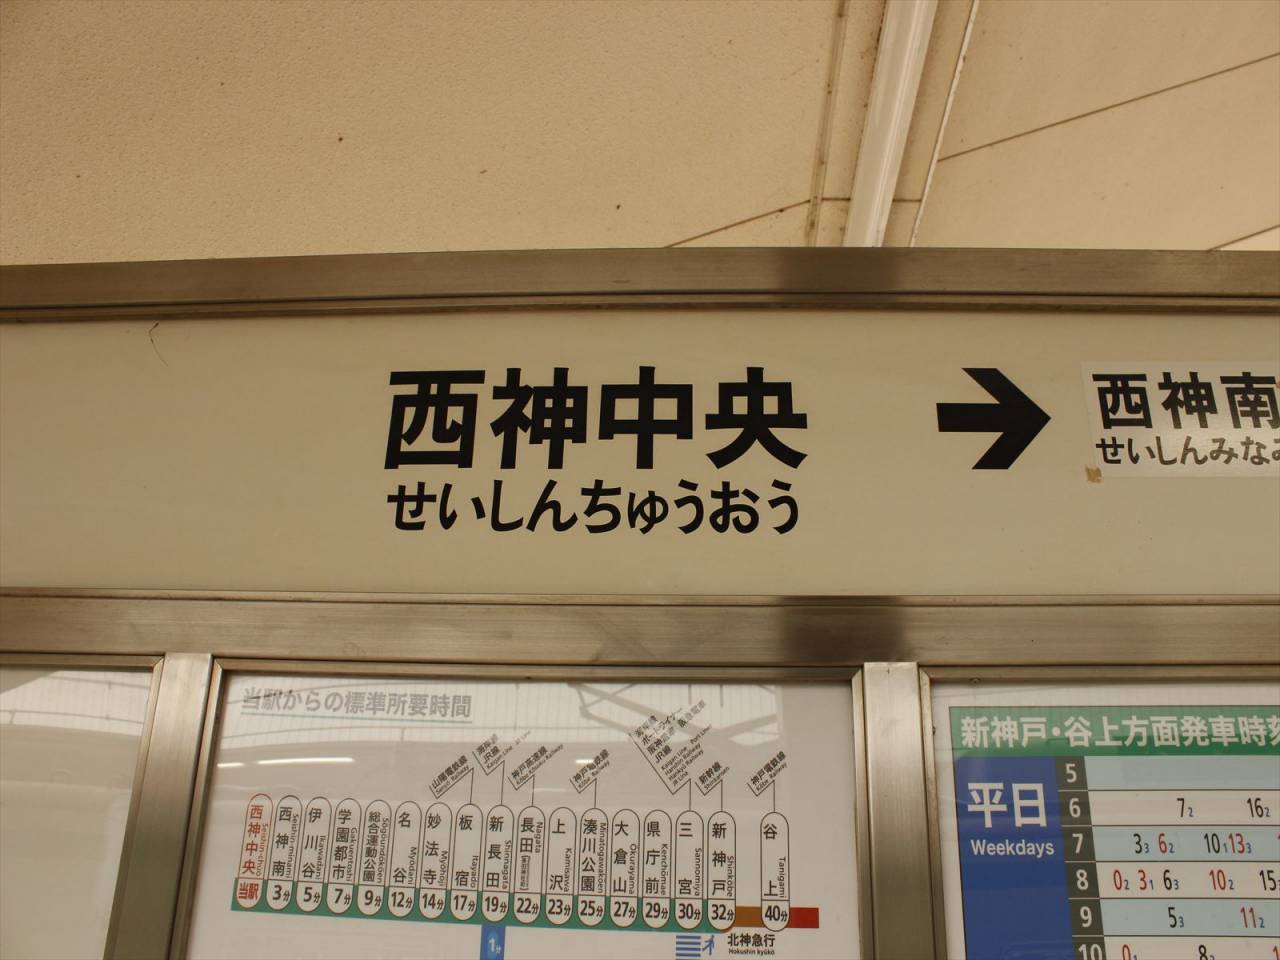 写真deフカボリ「神戸市営地下鉄西神中央駅」今回は、神戸芸術工科大学学生作品で「西神中央駅」をご紹介します。